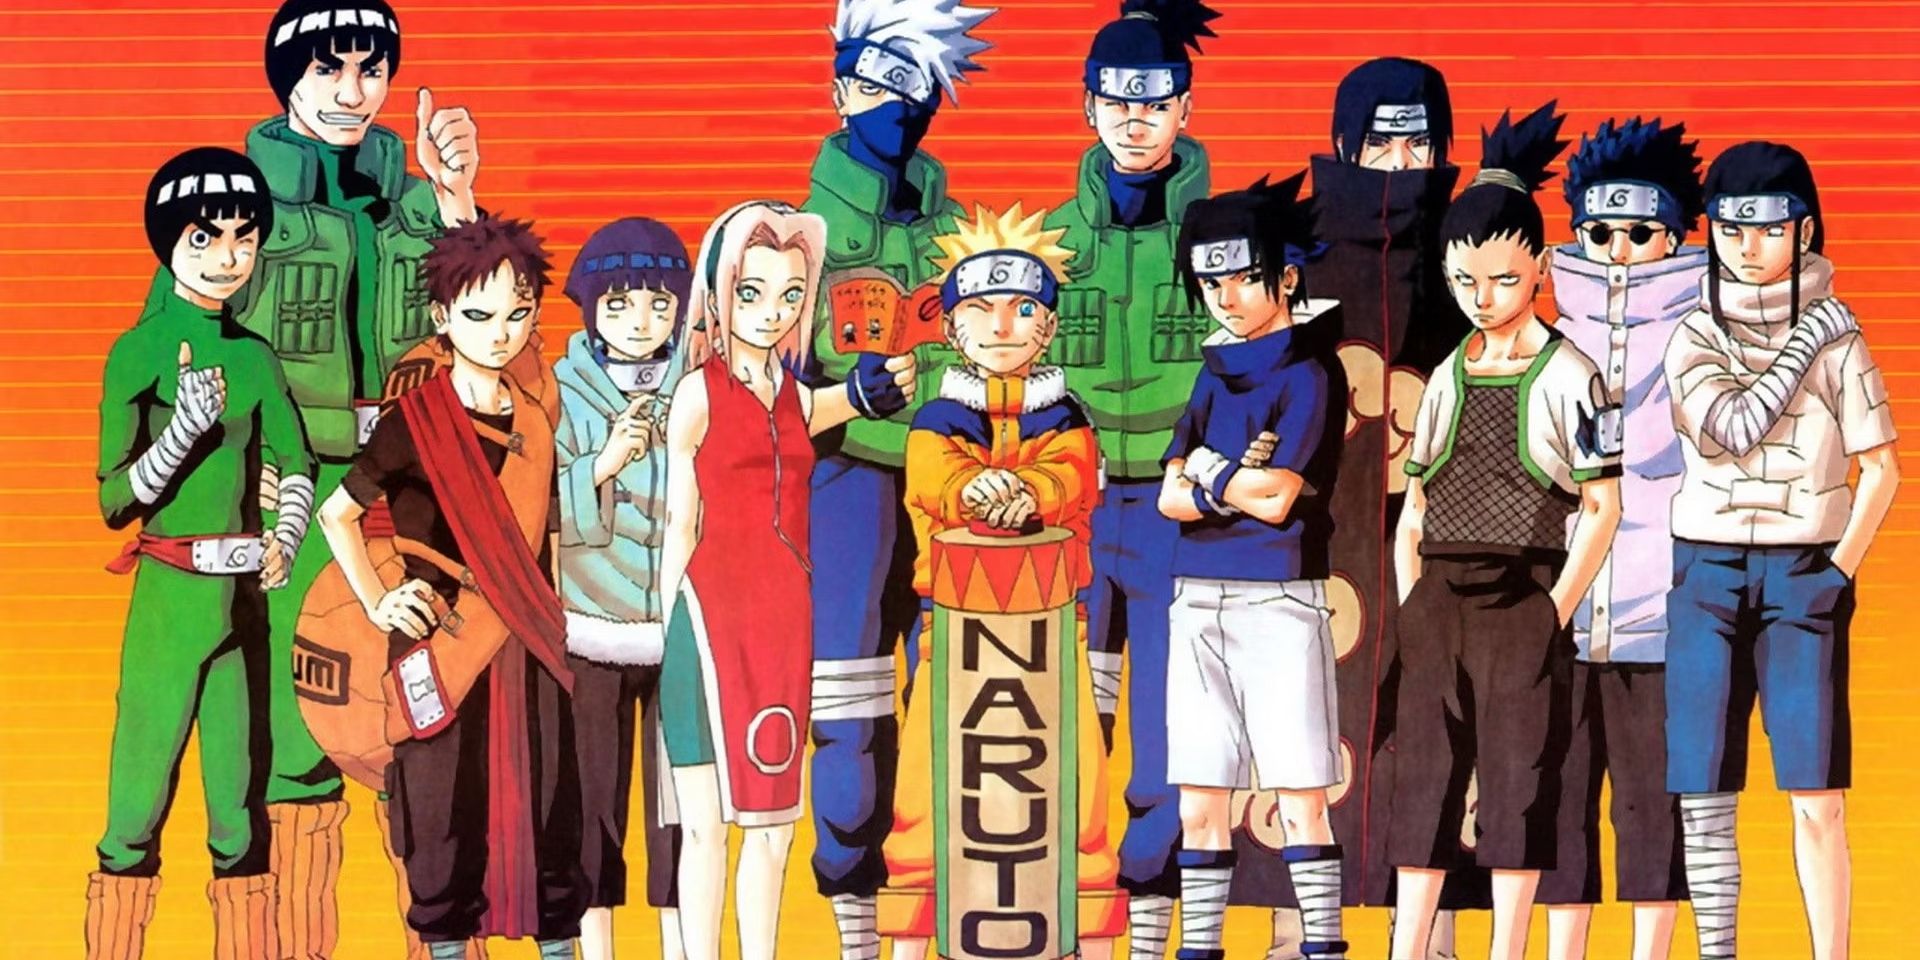 Elenco de Naruto Parte 1 posa contra um fundo gradiente laranja.